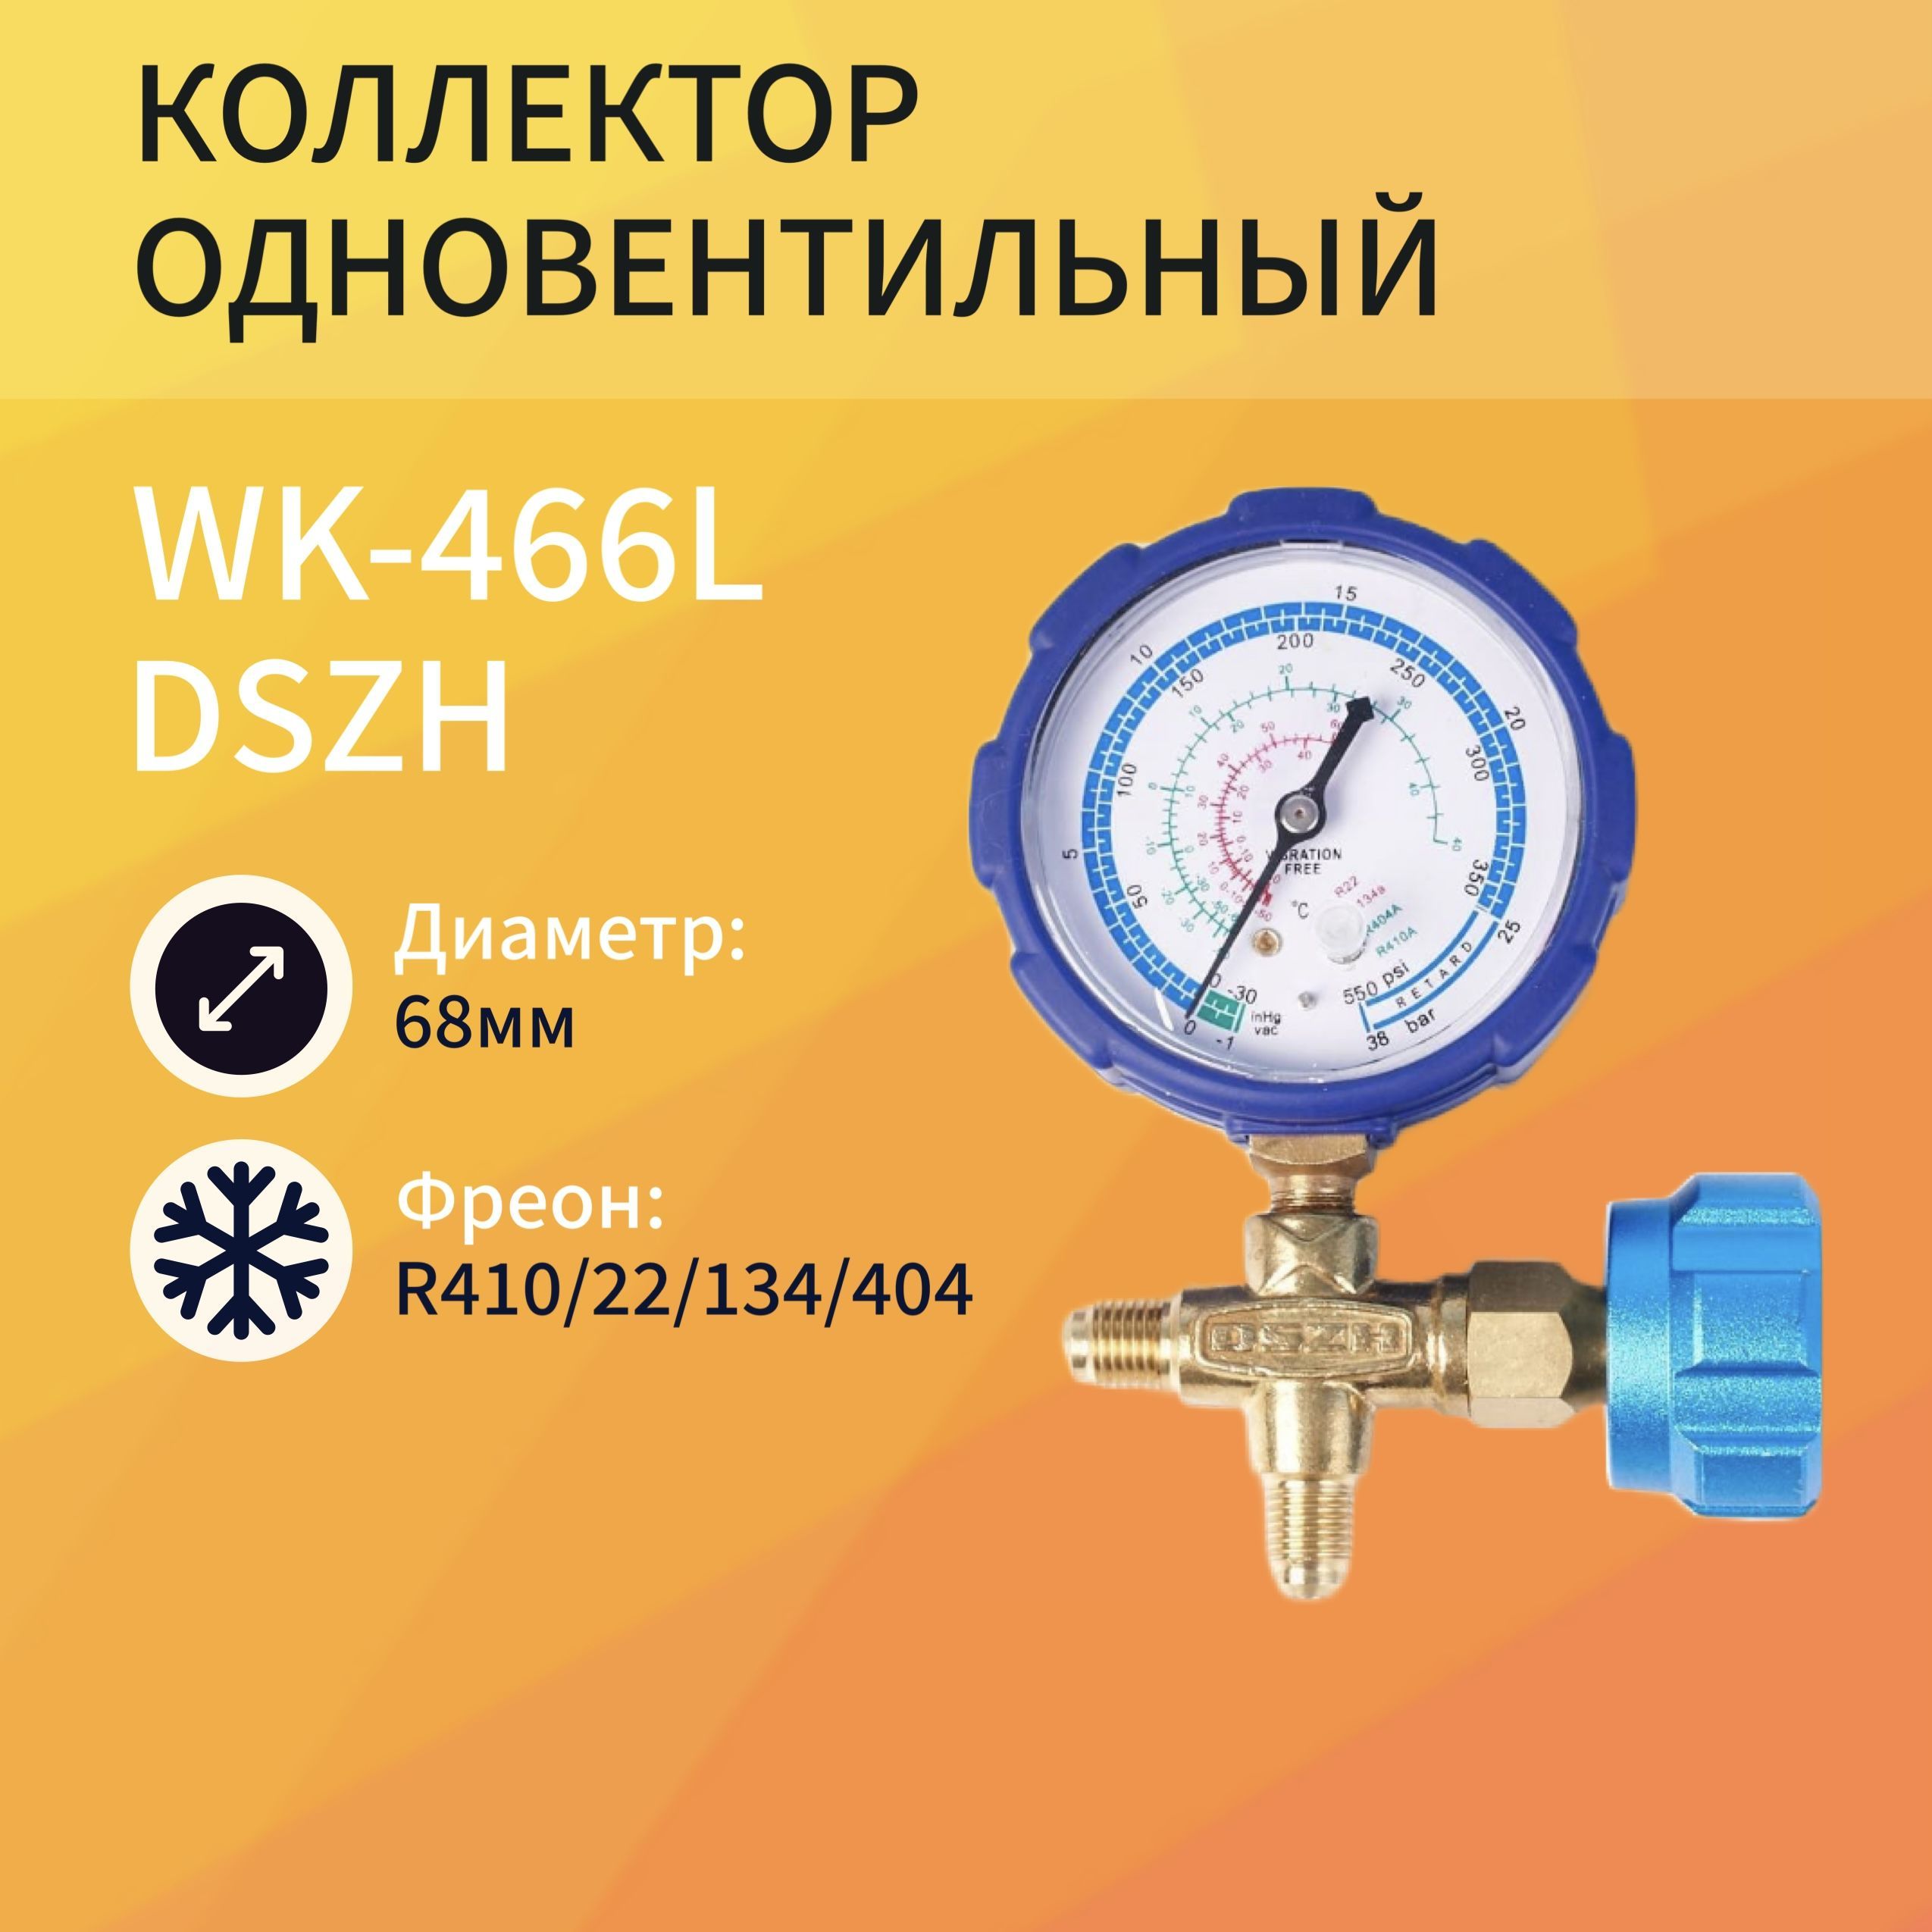 Коллектор одновентильный DSZH WK-466L